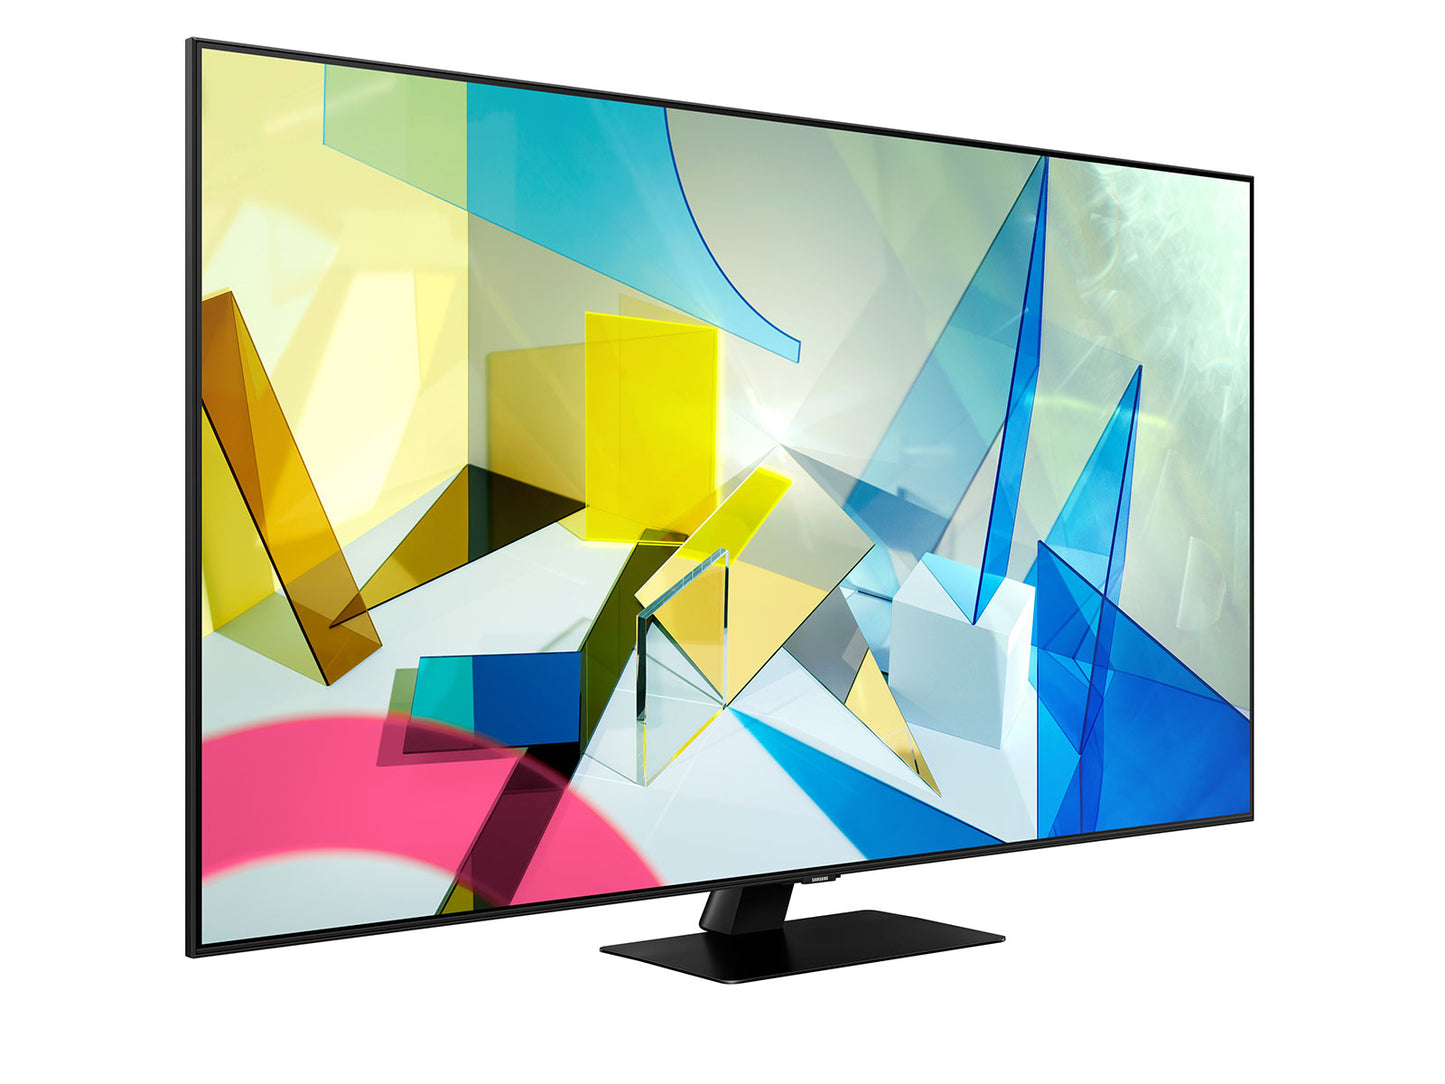 Samsung 65-in Q80T QLED 4K UHD HDR Smart TV QN65Q80TAFXZA (2020)